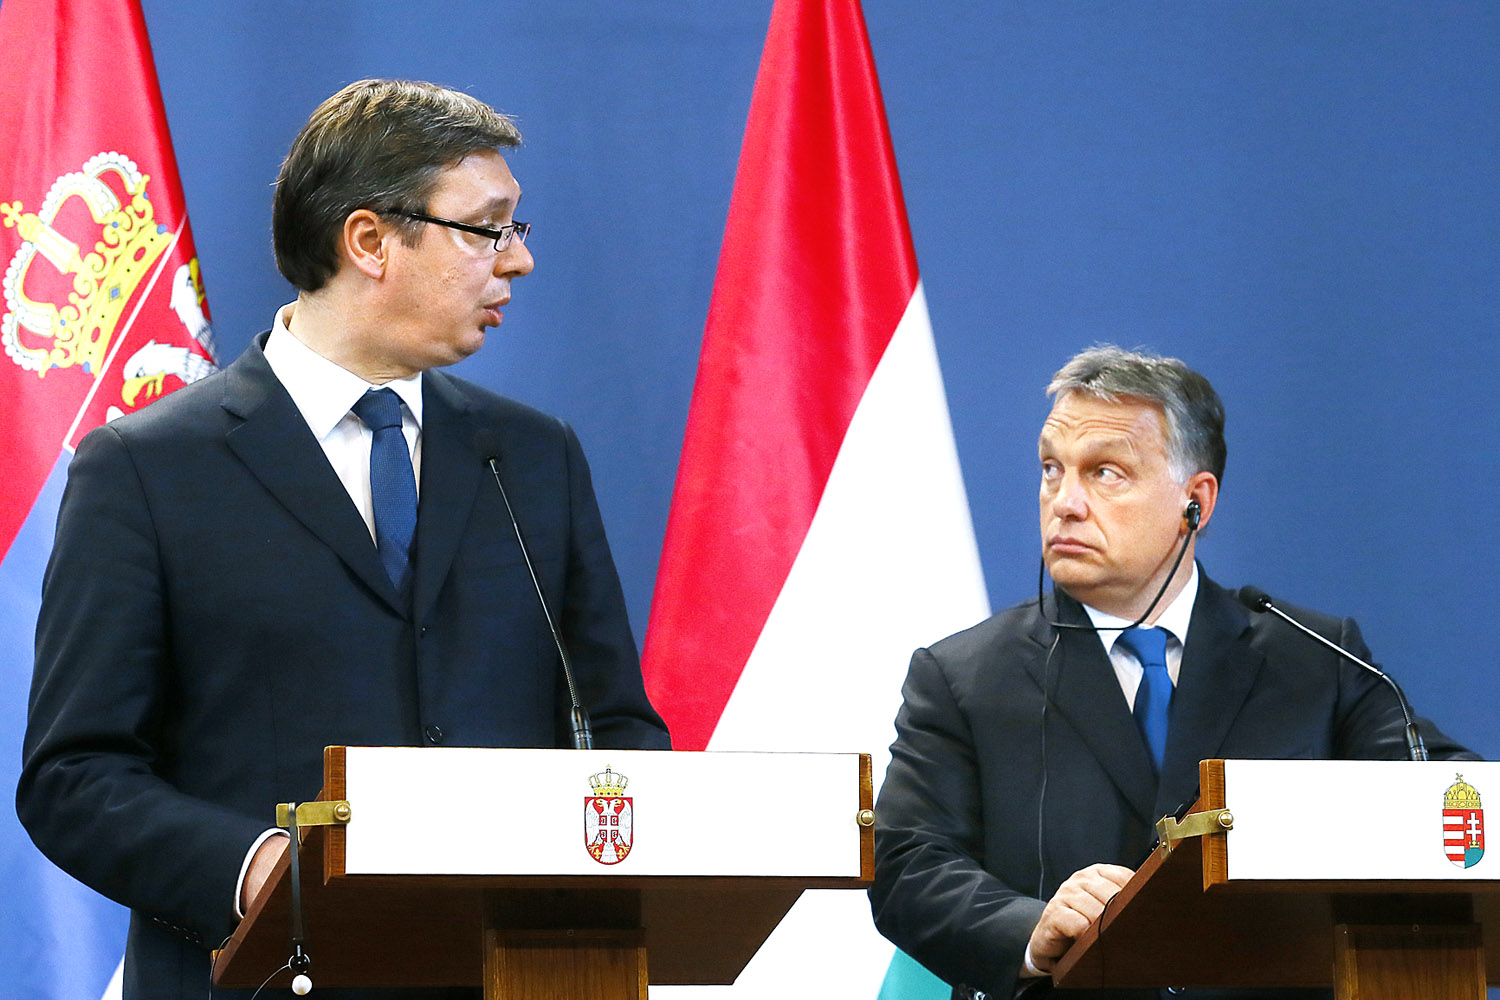 Vucsics és Orbán. Belgrád Brüsszel jóindulatát keresi